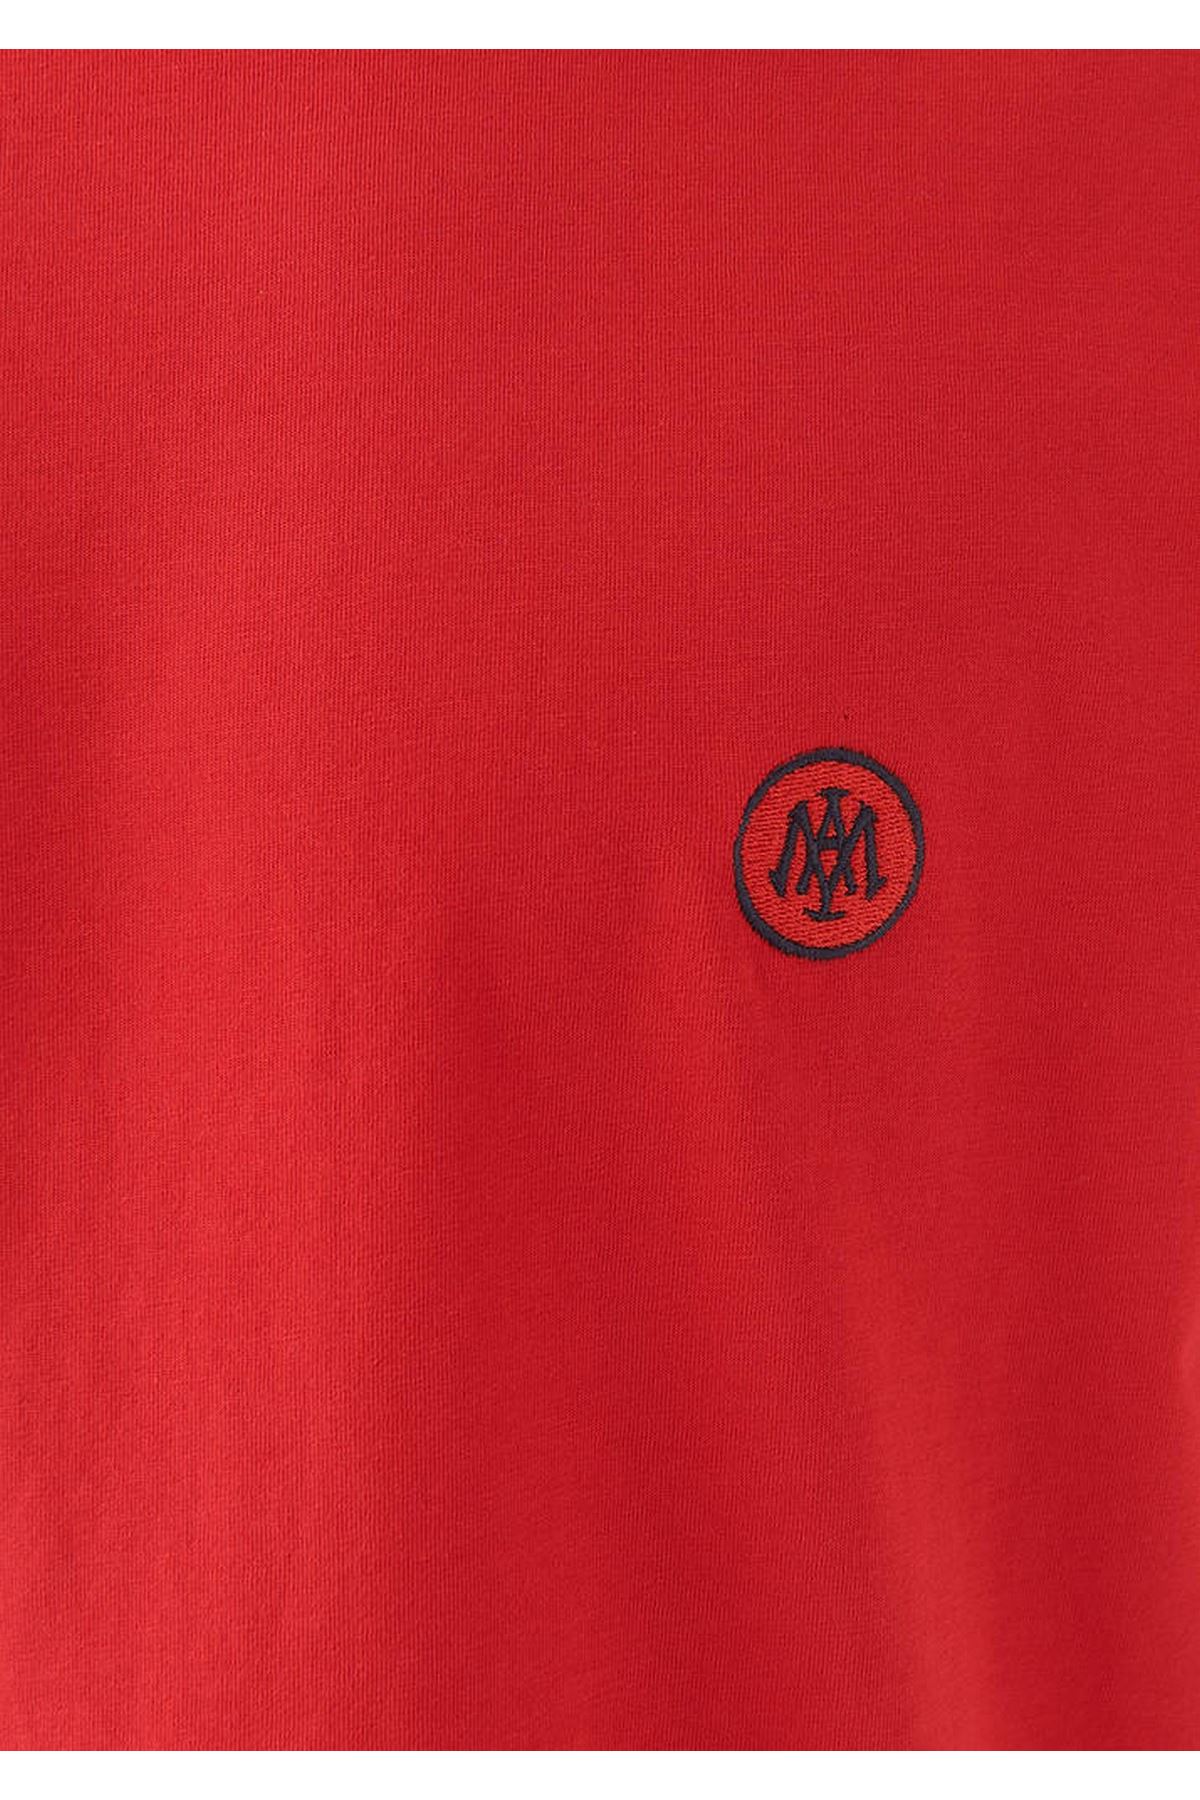 Logo Nakışlı  Mavi Erkek Kırmızı Tişört - M067074-70471